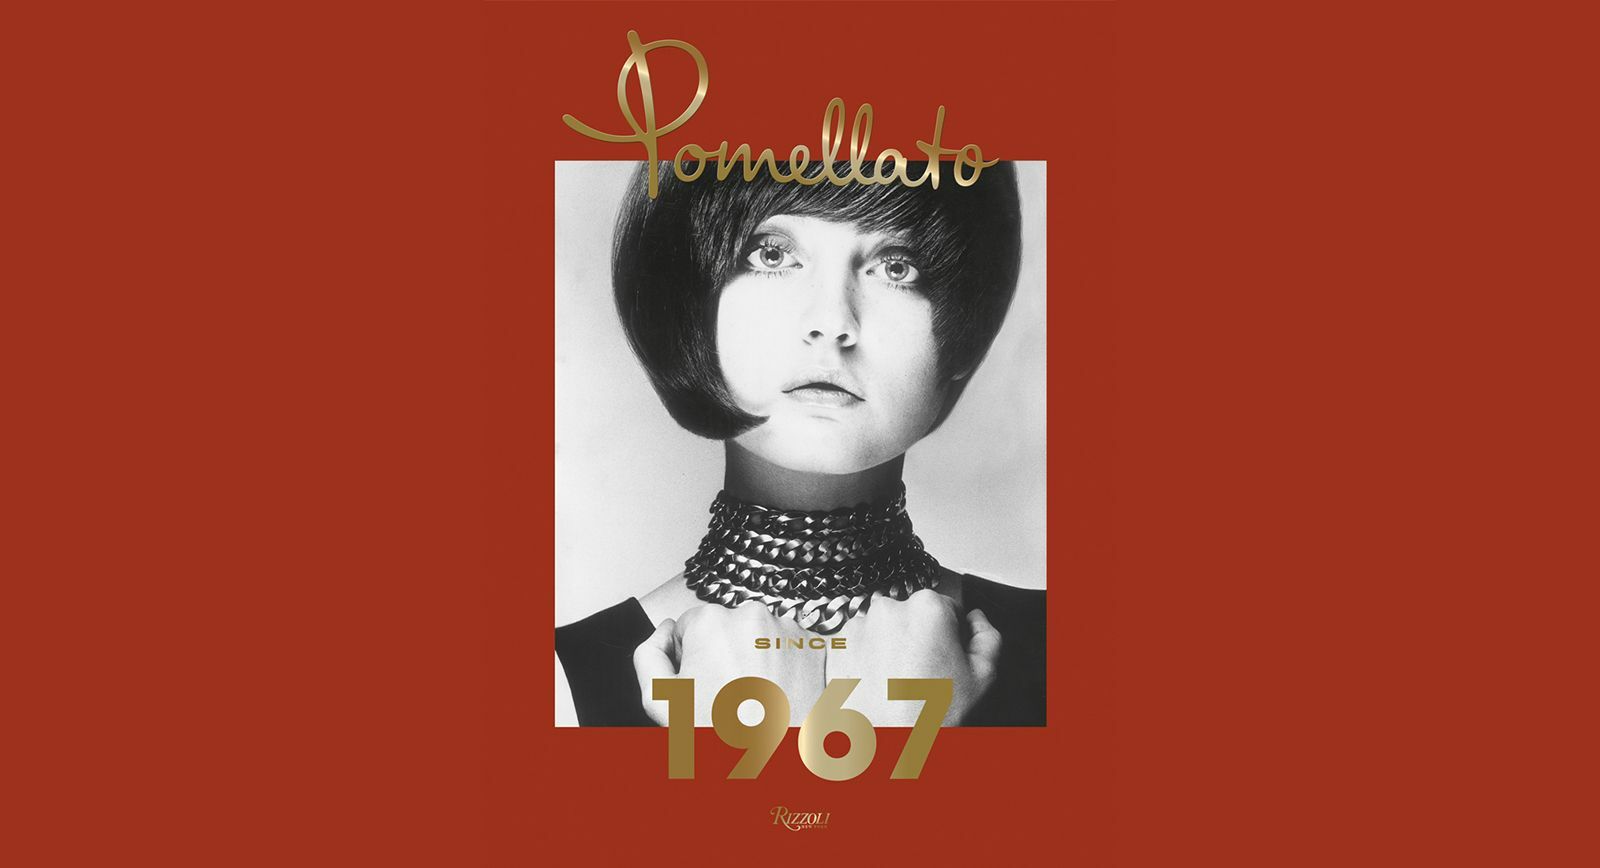 'Pomellato since 1967' 50th Anniversary Book Review